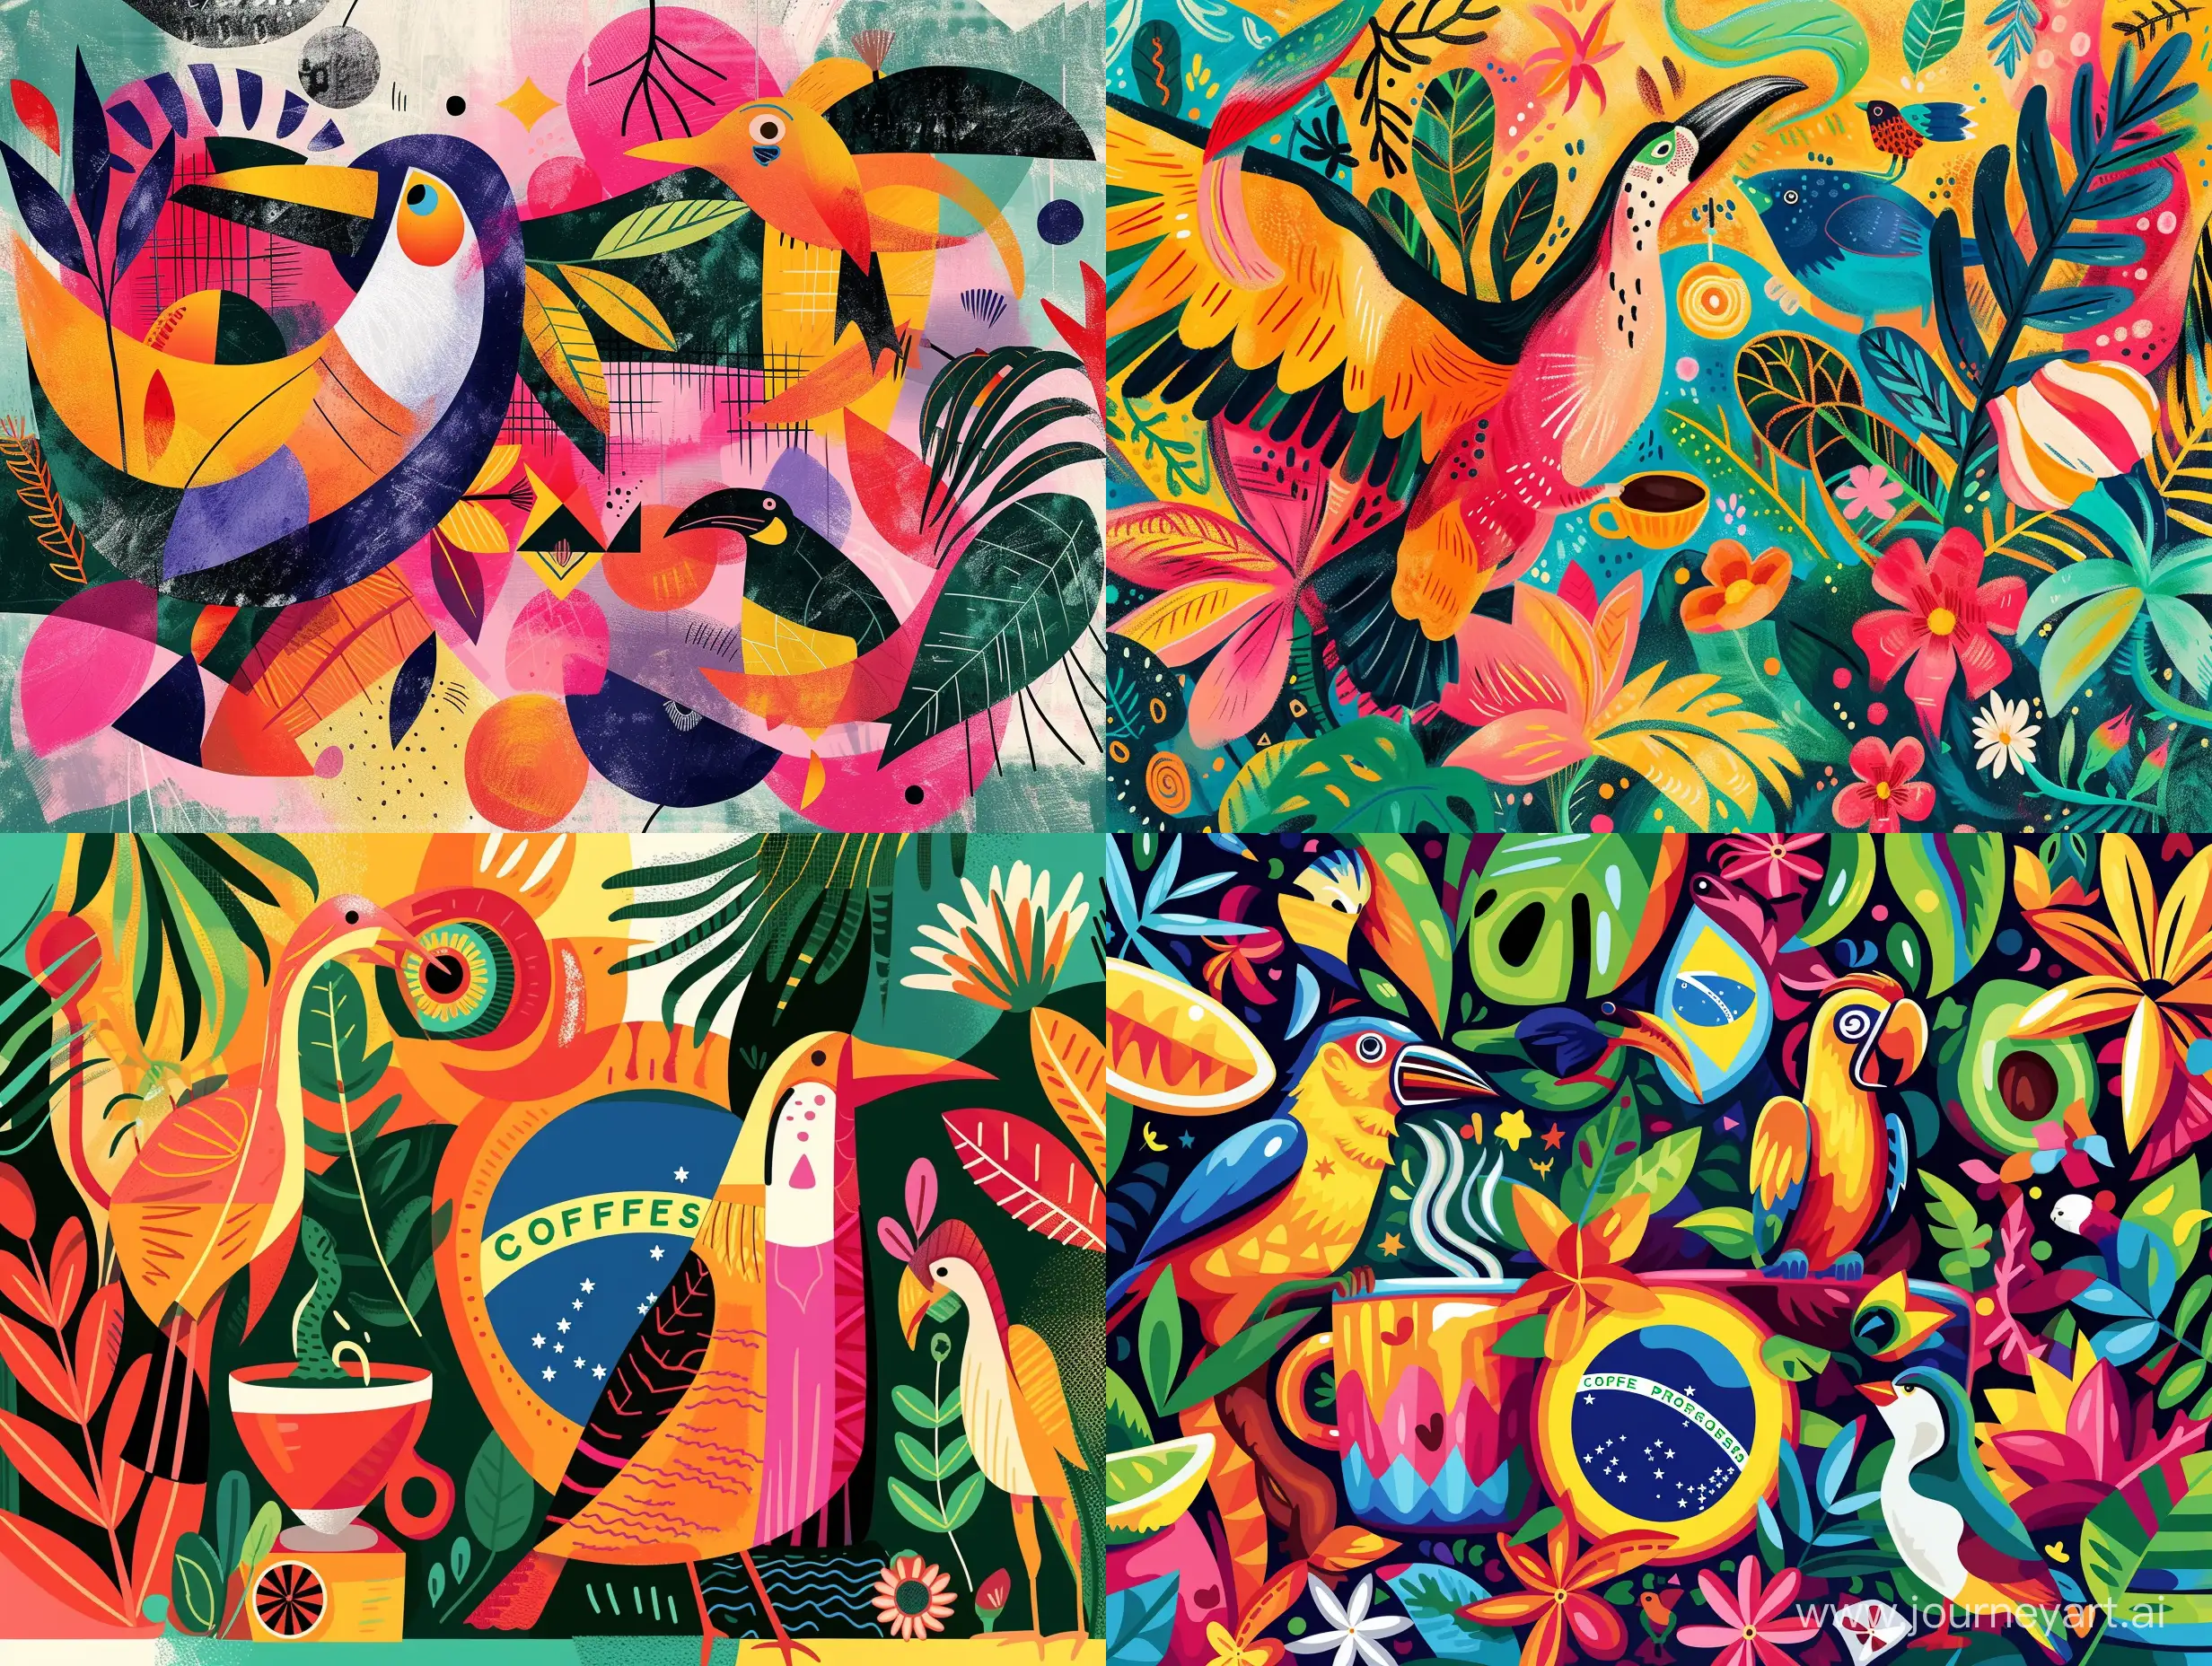 яркая и сочная иллюстрация в стиле современная абстракция нарисованная кистями в Photoshop из символов Бразилии и кофе, животных и птиц Бразилии.